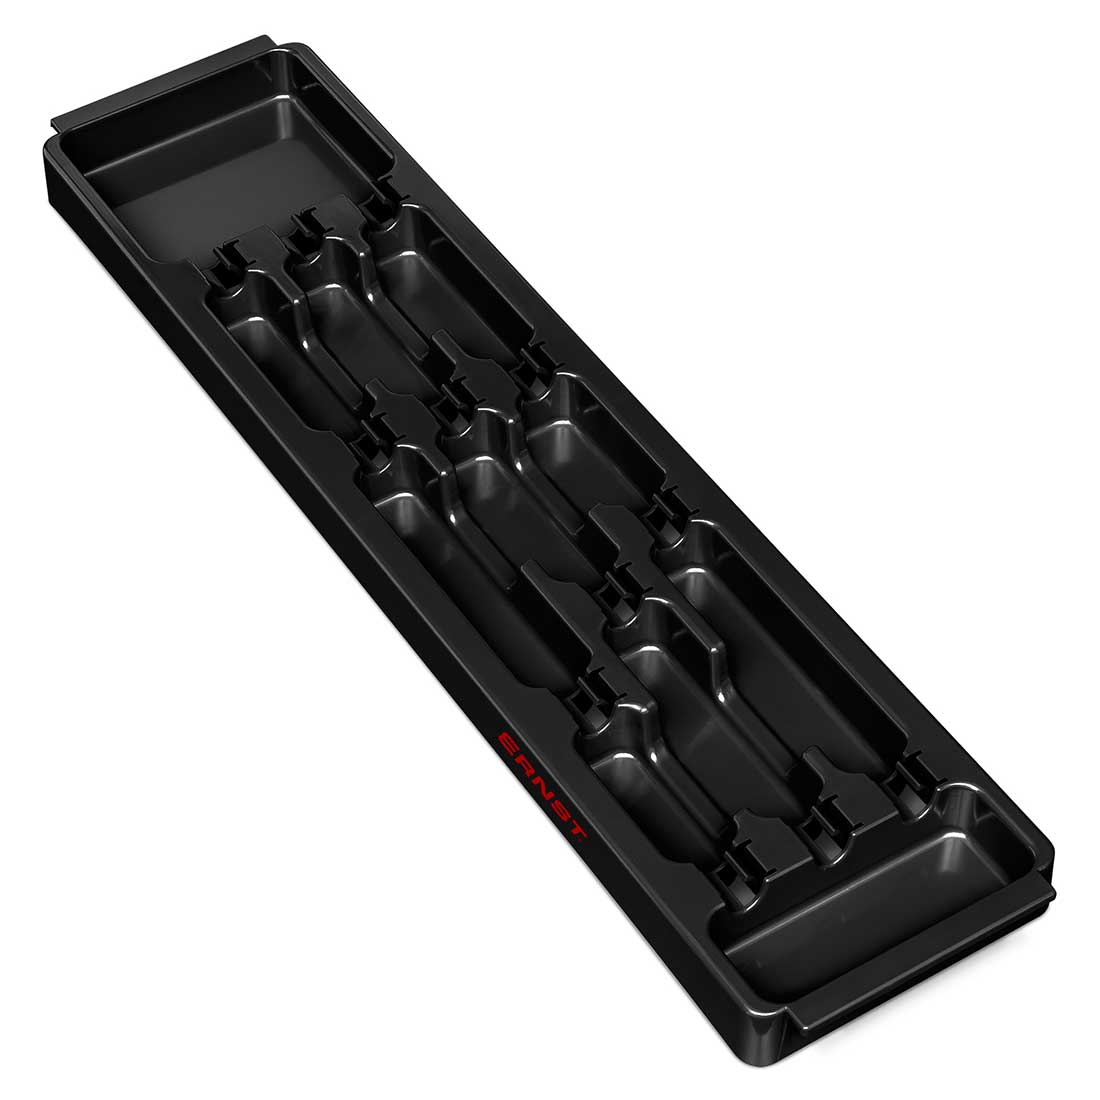 Ernst 5021 3 Compartment Organizer Tray - Black